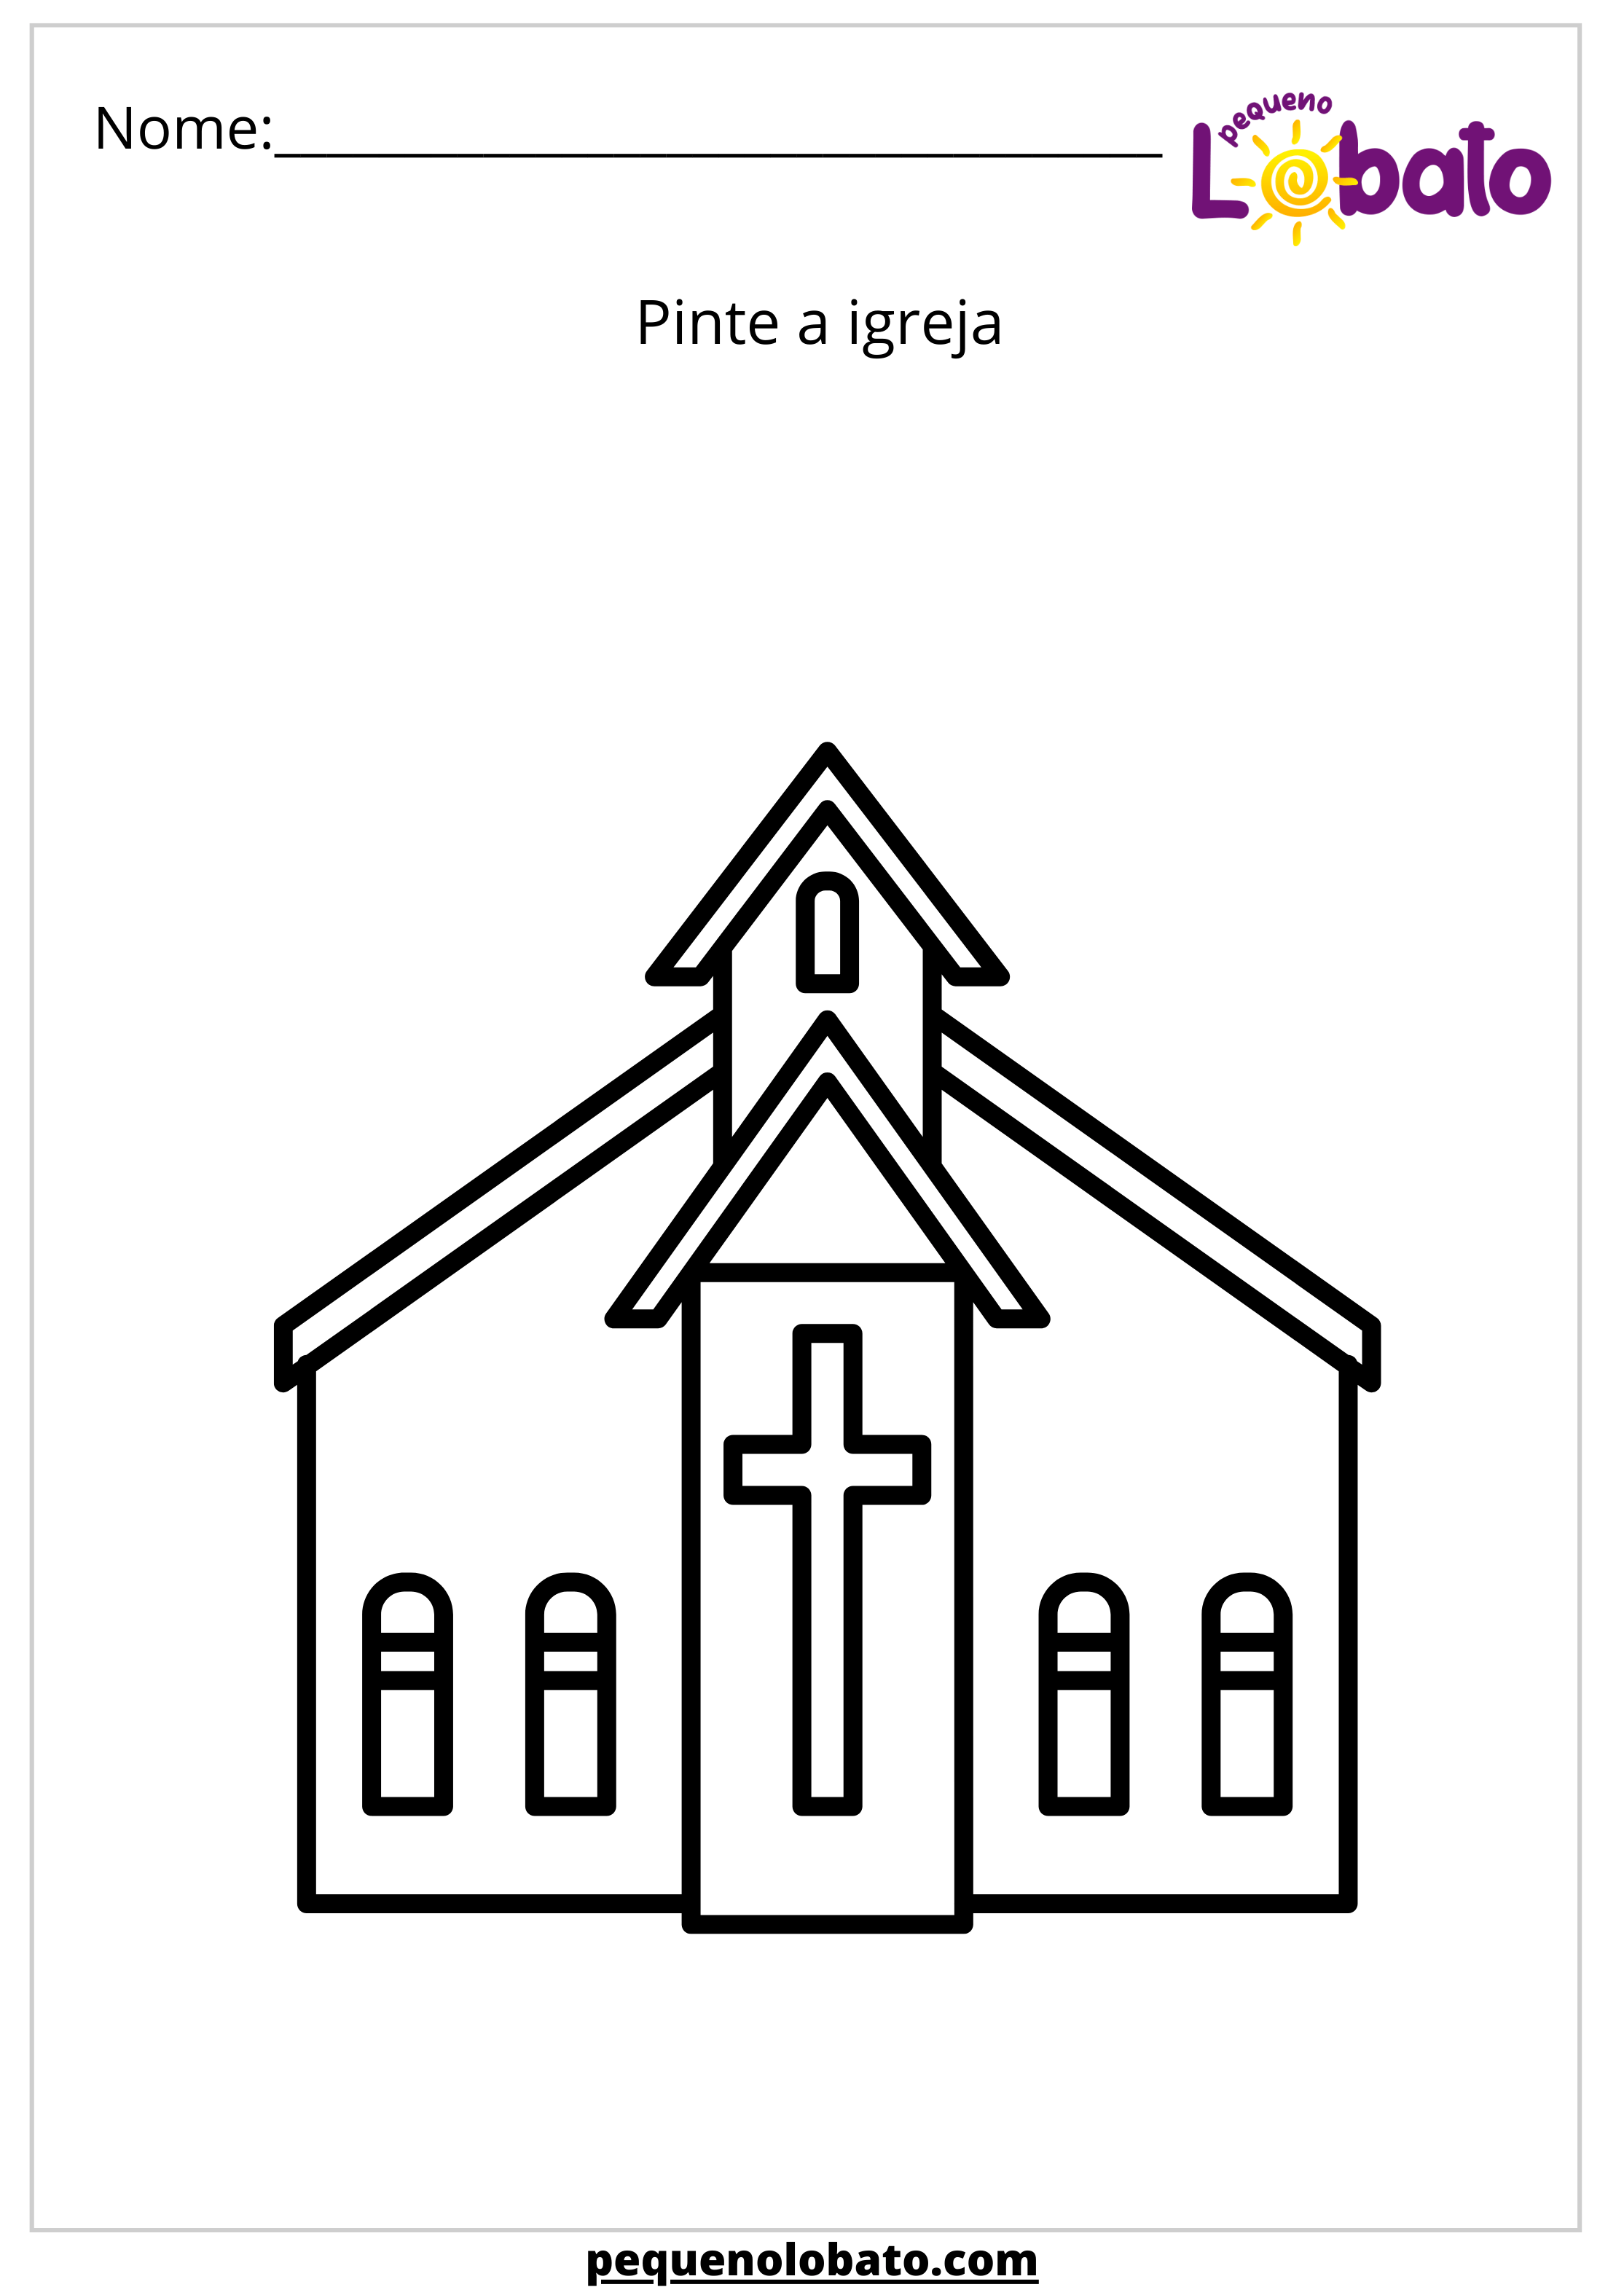 Atividade bíblica pinte a igreja para imprimir